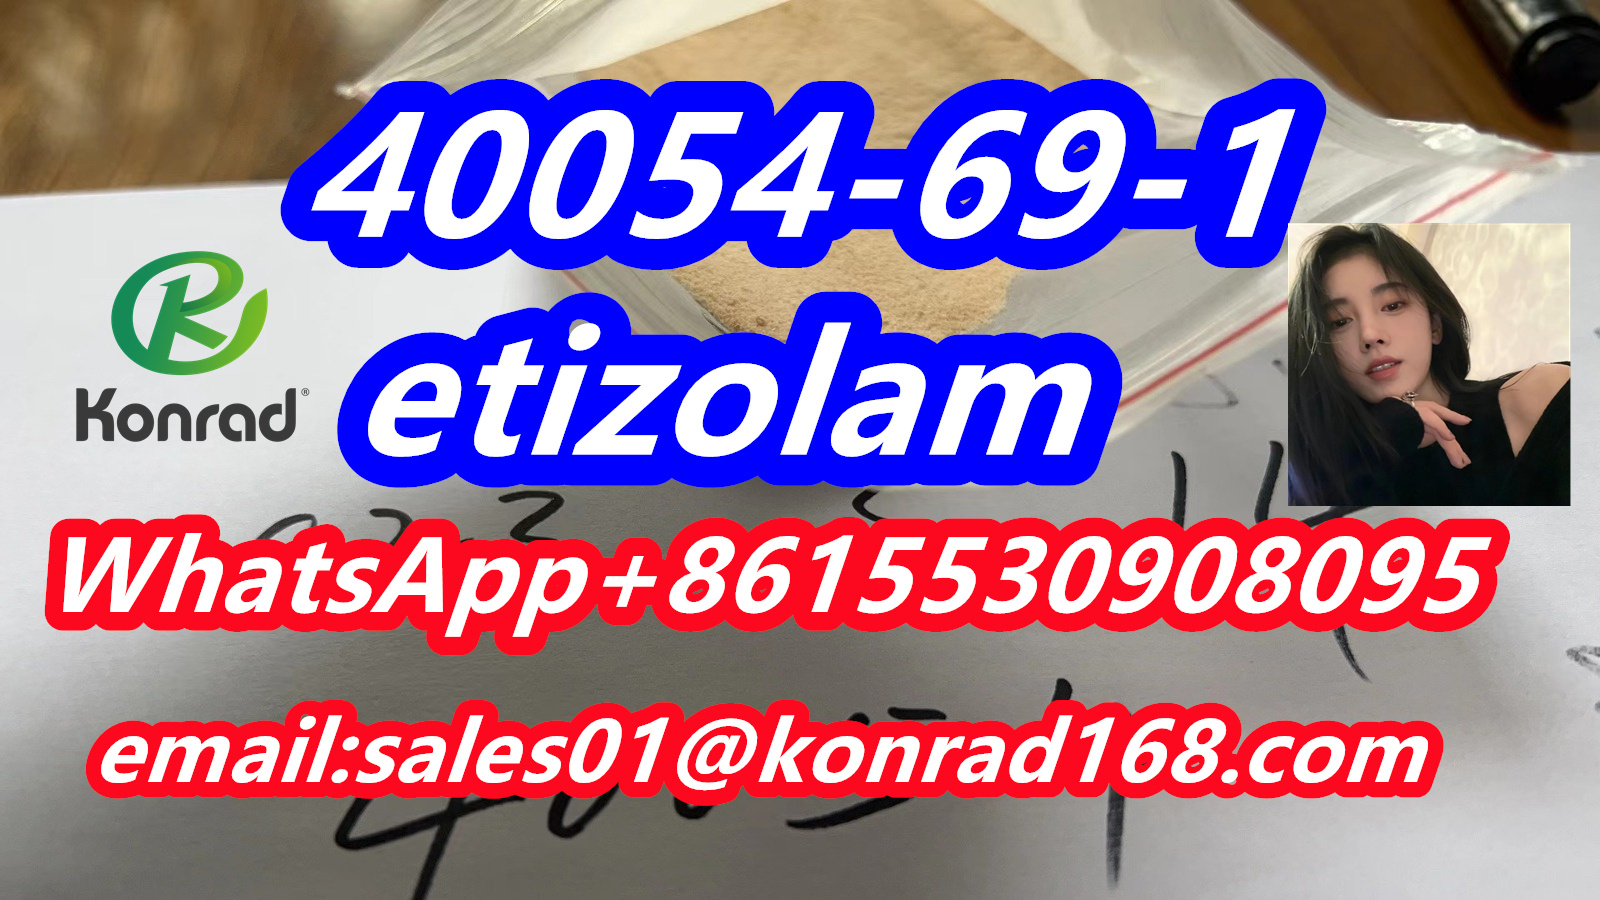  etizolam  CAS 40054-69-1